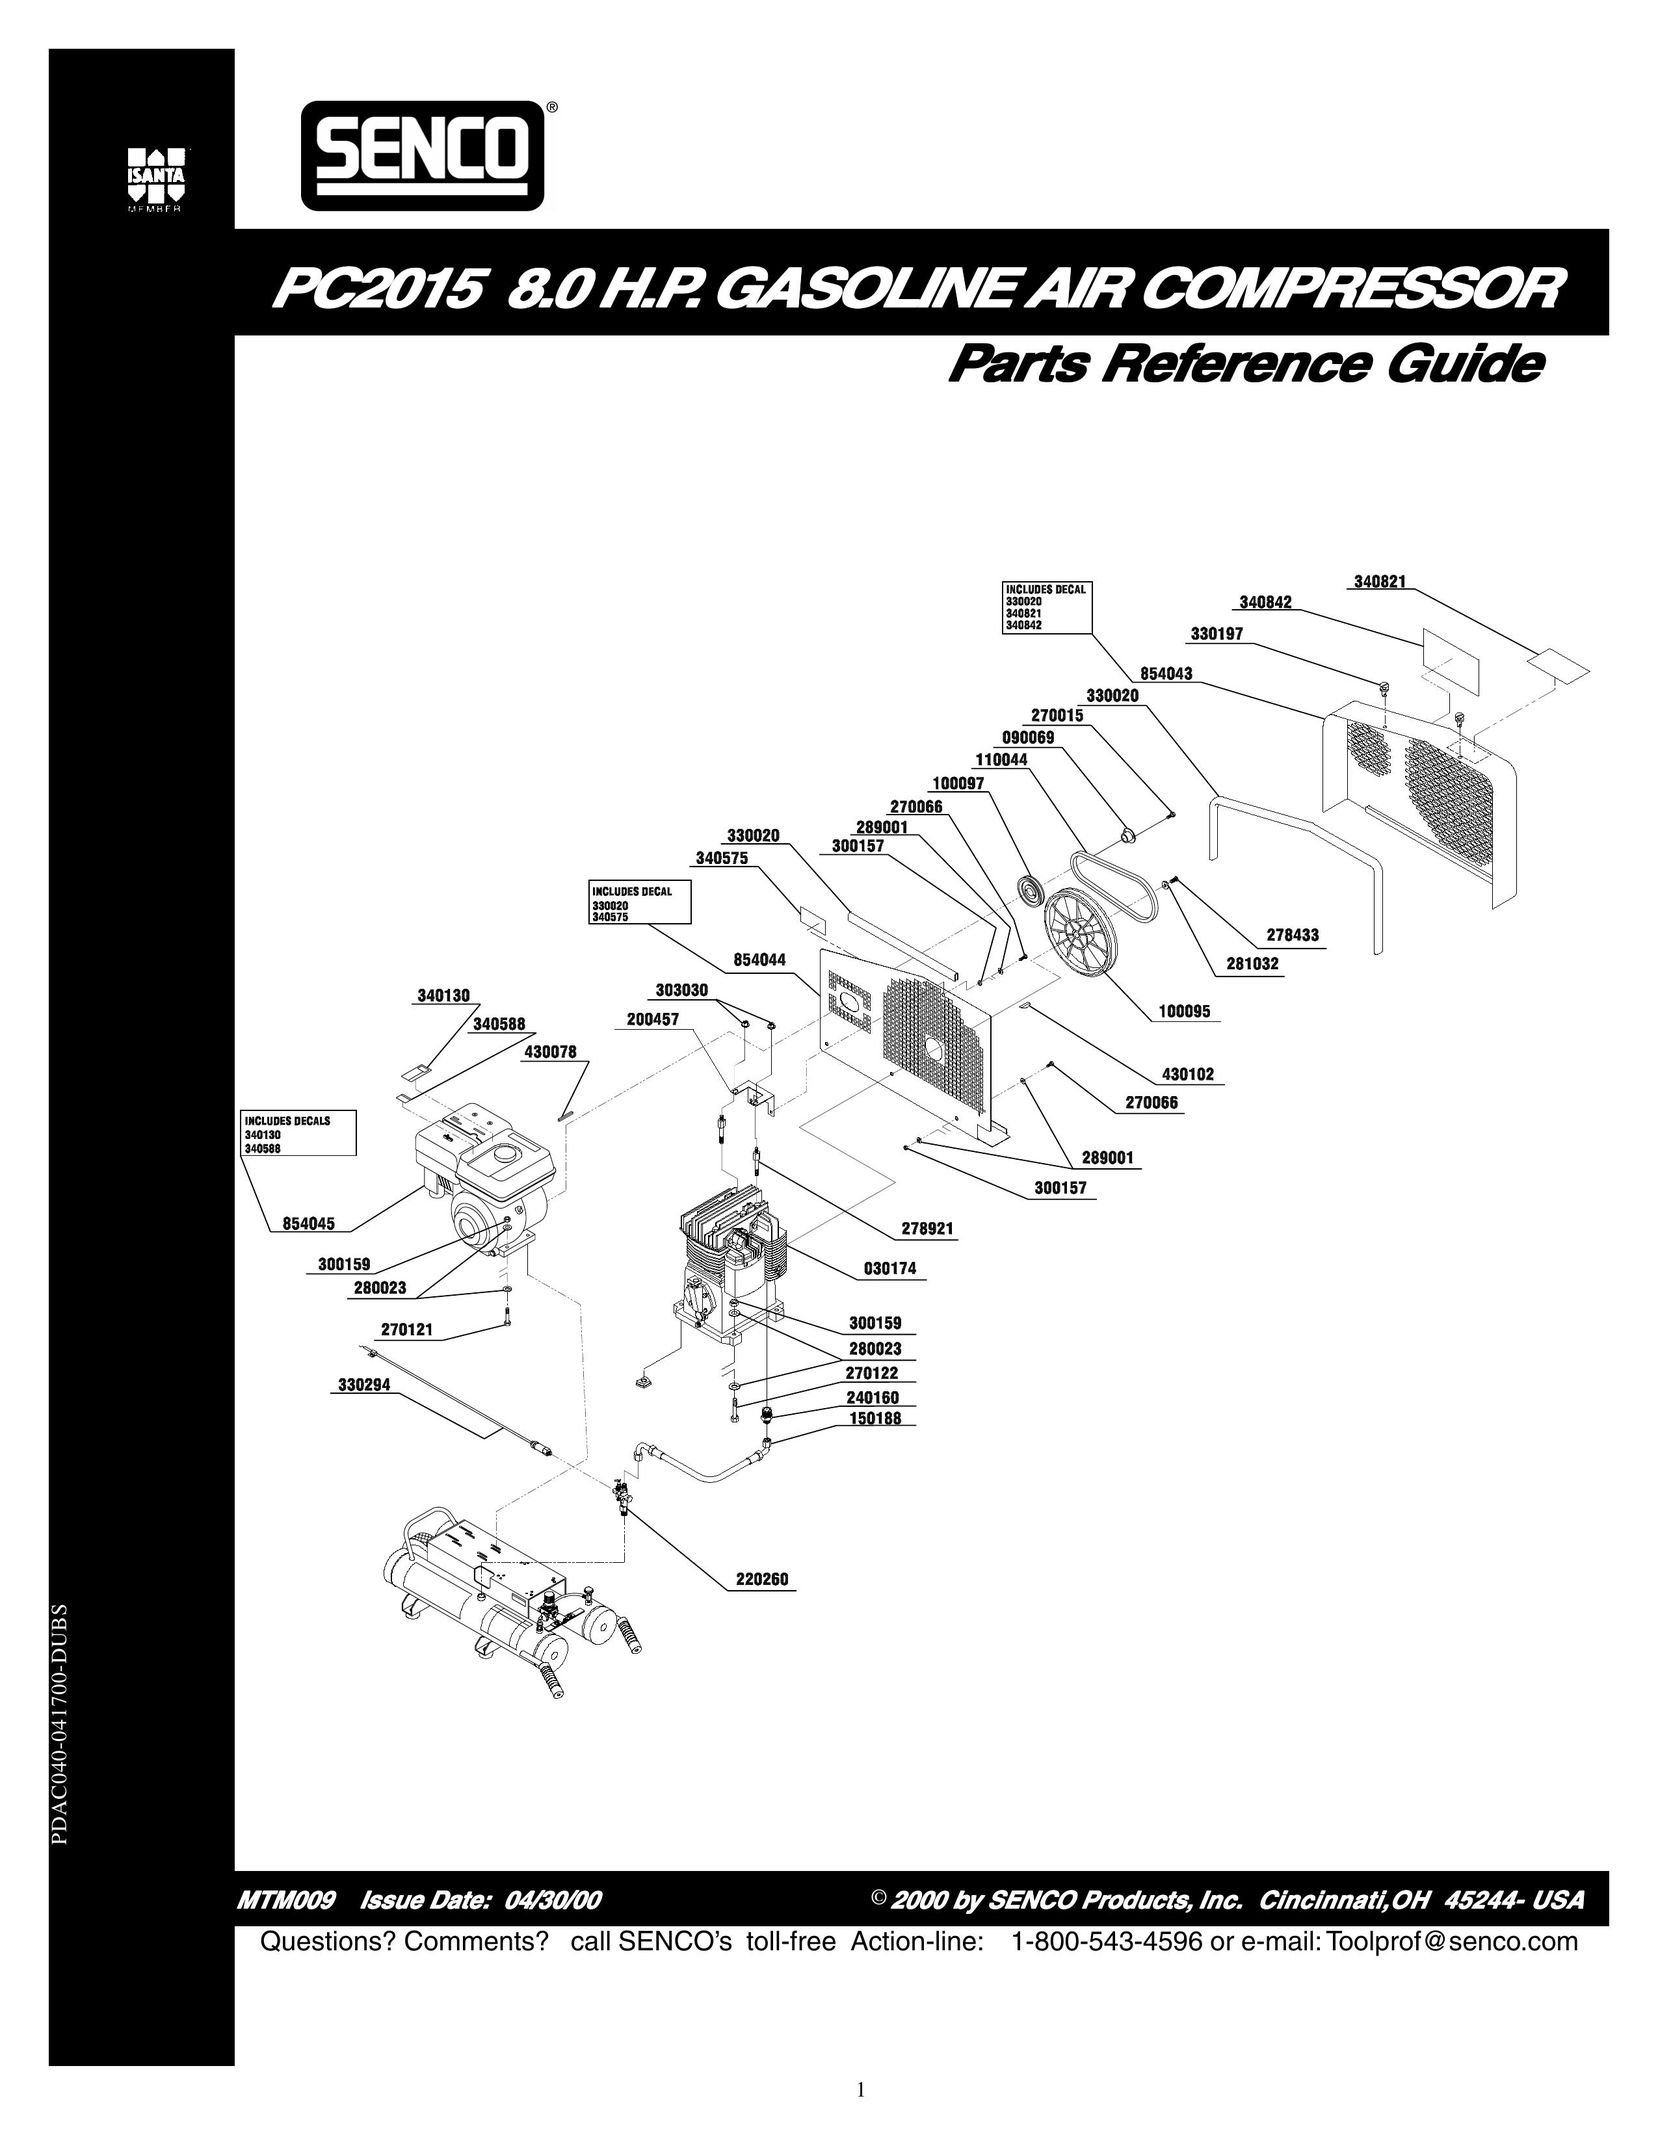 Senco MTM009 Air Compressor User Manual